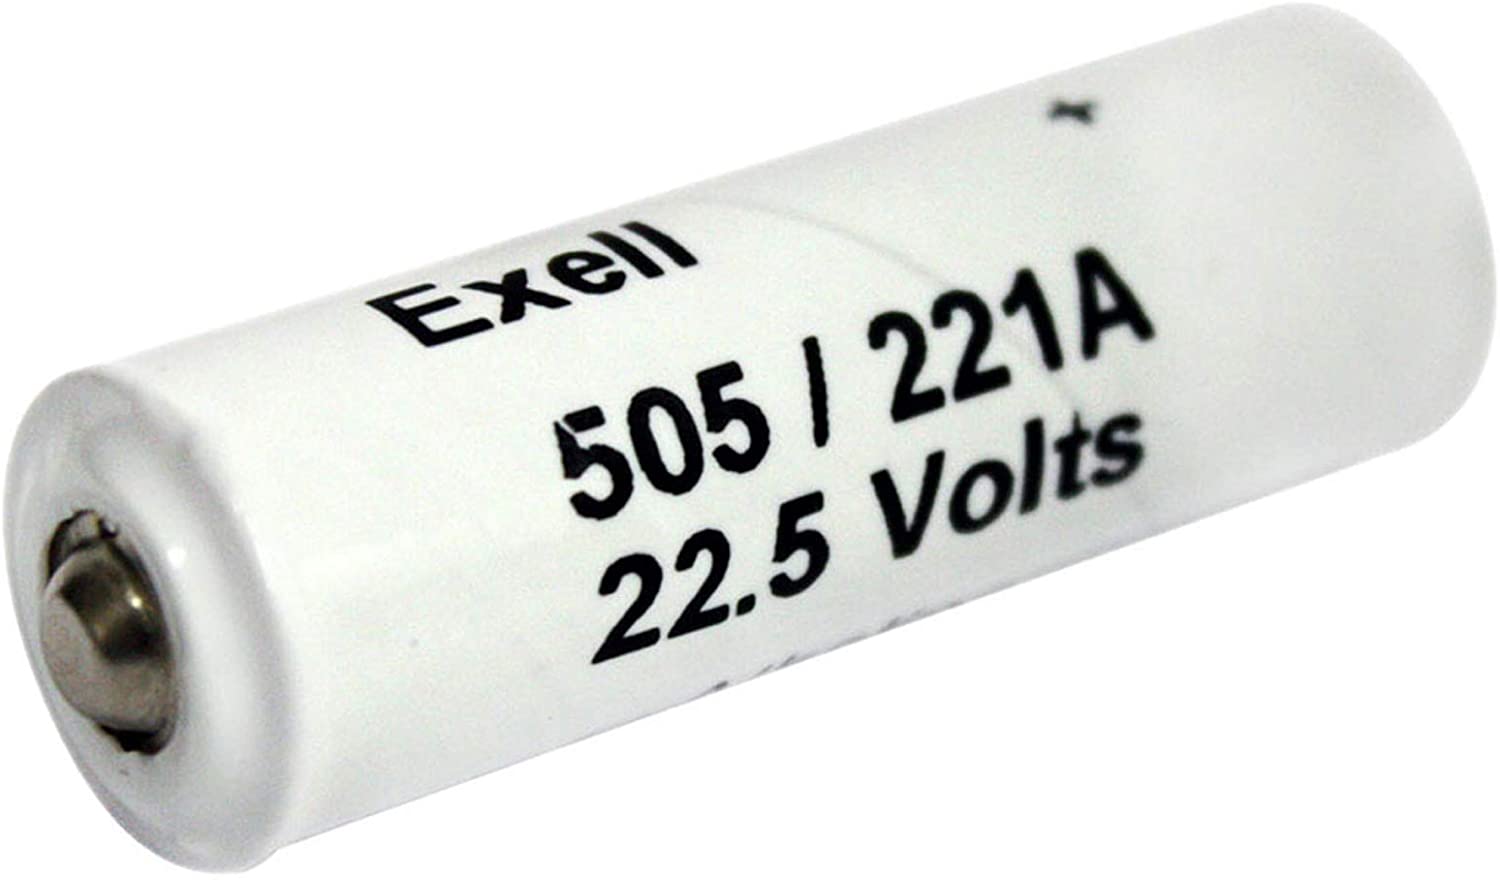 Exell Battery A221/505A compatible con micrófono Newmann U87, medidores AVO